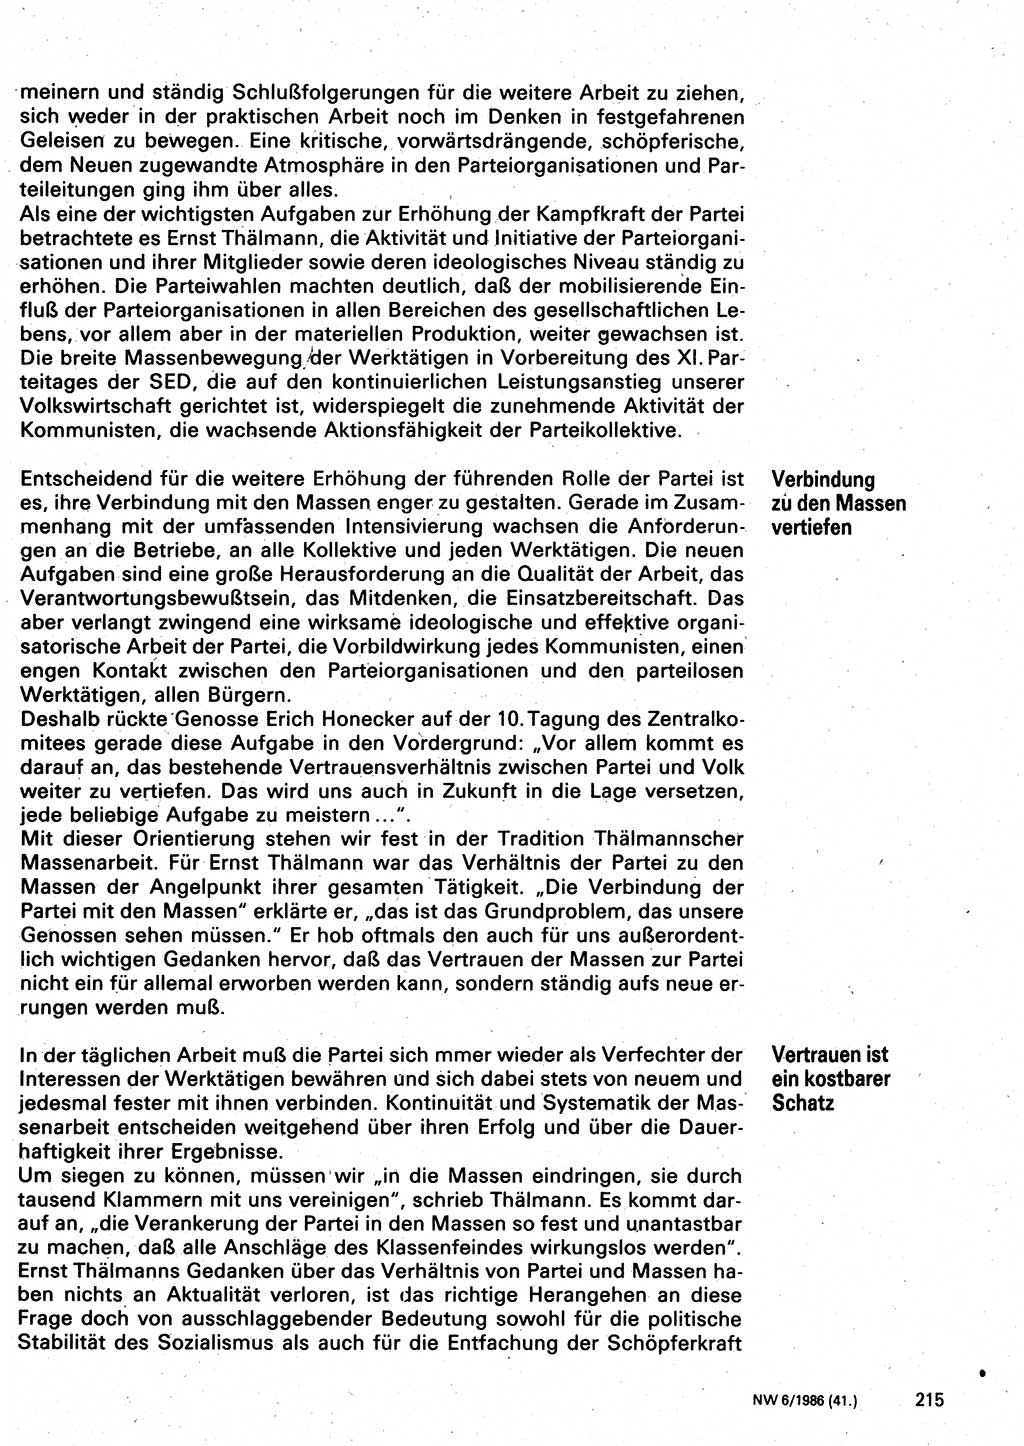 Neuer Weg (NW), Organ des Zentralkomitees (ZK) der SED (Sozialistische Einheitspartei Deutschlands) für Fragen des Parteilebens, 41. Jahrgang [Deutsche Demokratische Republik (DDR)] 1986, Seite 215 (NW ZK SED DDR 1986, S. 215)